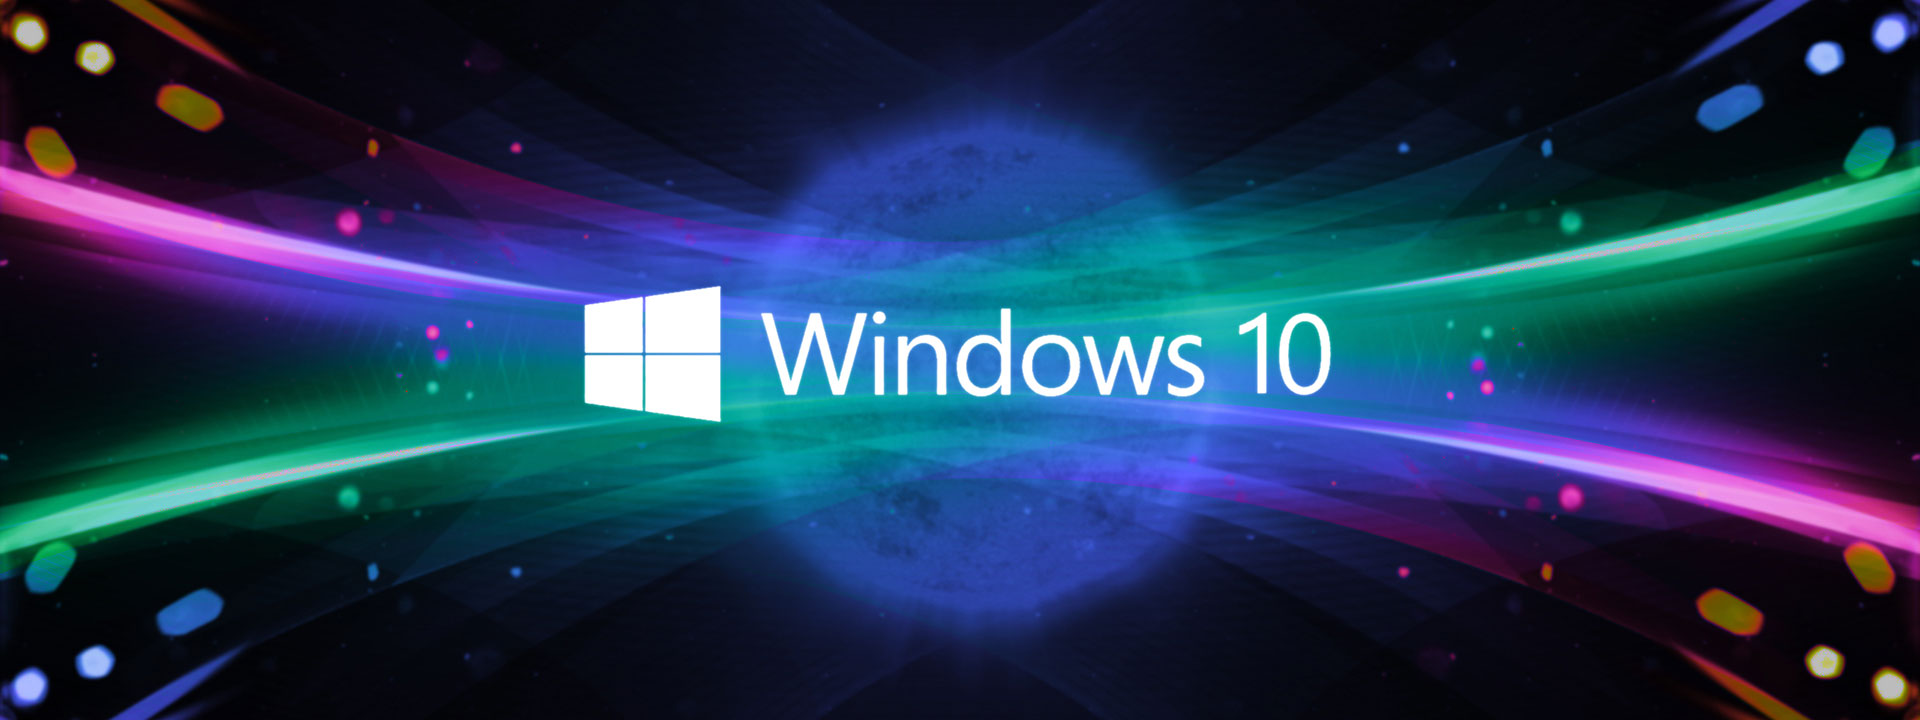 Bạn đang cần cập nhật phiên bản mới nhất cho hệ điều hành Windows 10 của mình? Bạn không chỉ được cải thiện về hiệu suất và tính năng, mà còn được bảo mật tốt hơn với các bản vá lỗi mới nhất. Hãy tận dụng tính năng đầy tiện ích này để luôn có được một hệ điều hành Windows 10 đáng tin cậy và tối ưu hơn.